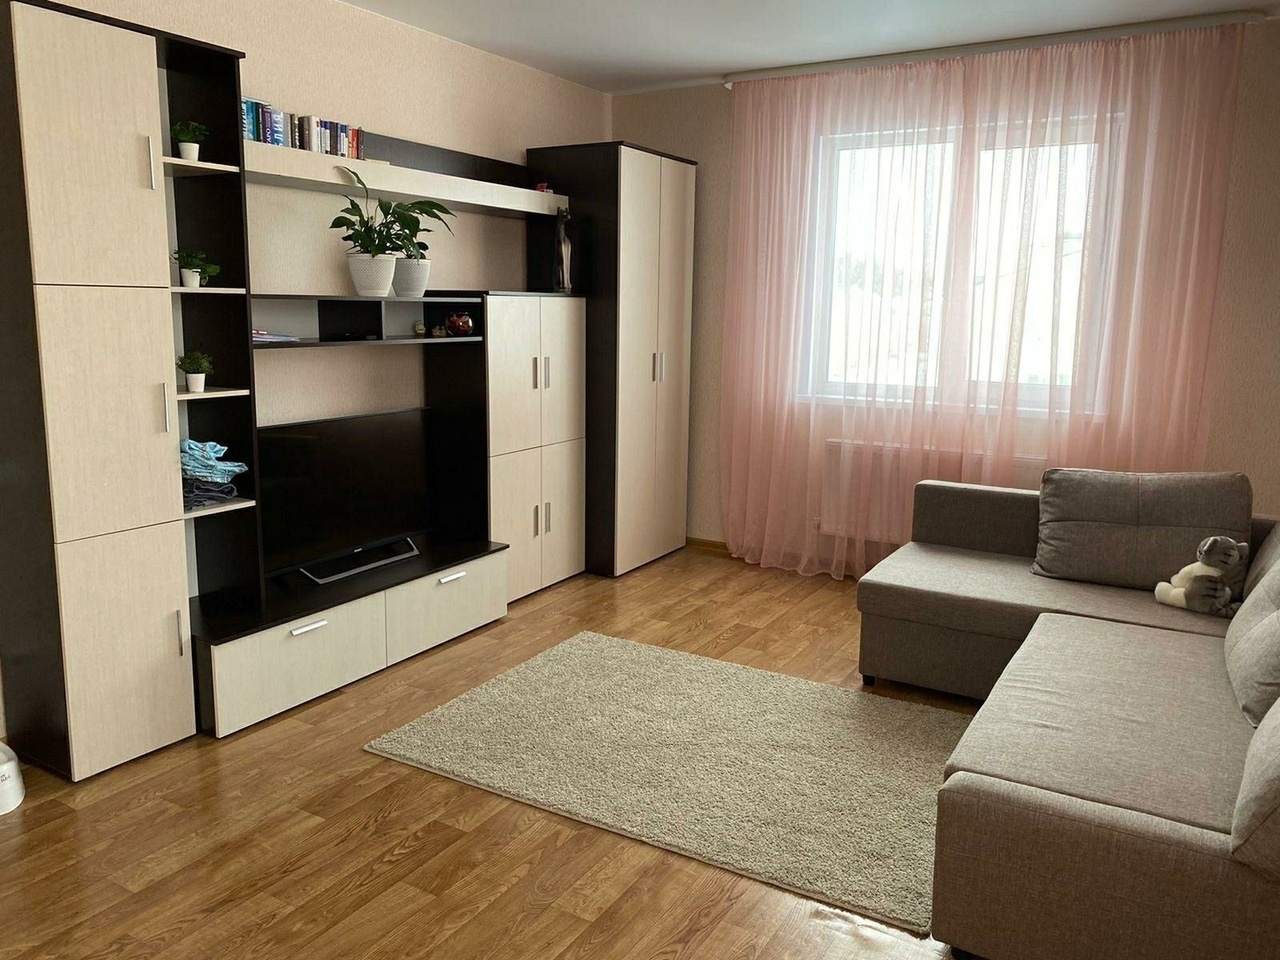 Сниму 1 комнатную квартиру без мебели на длительный срок